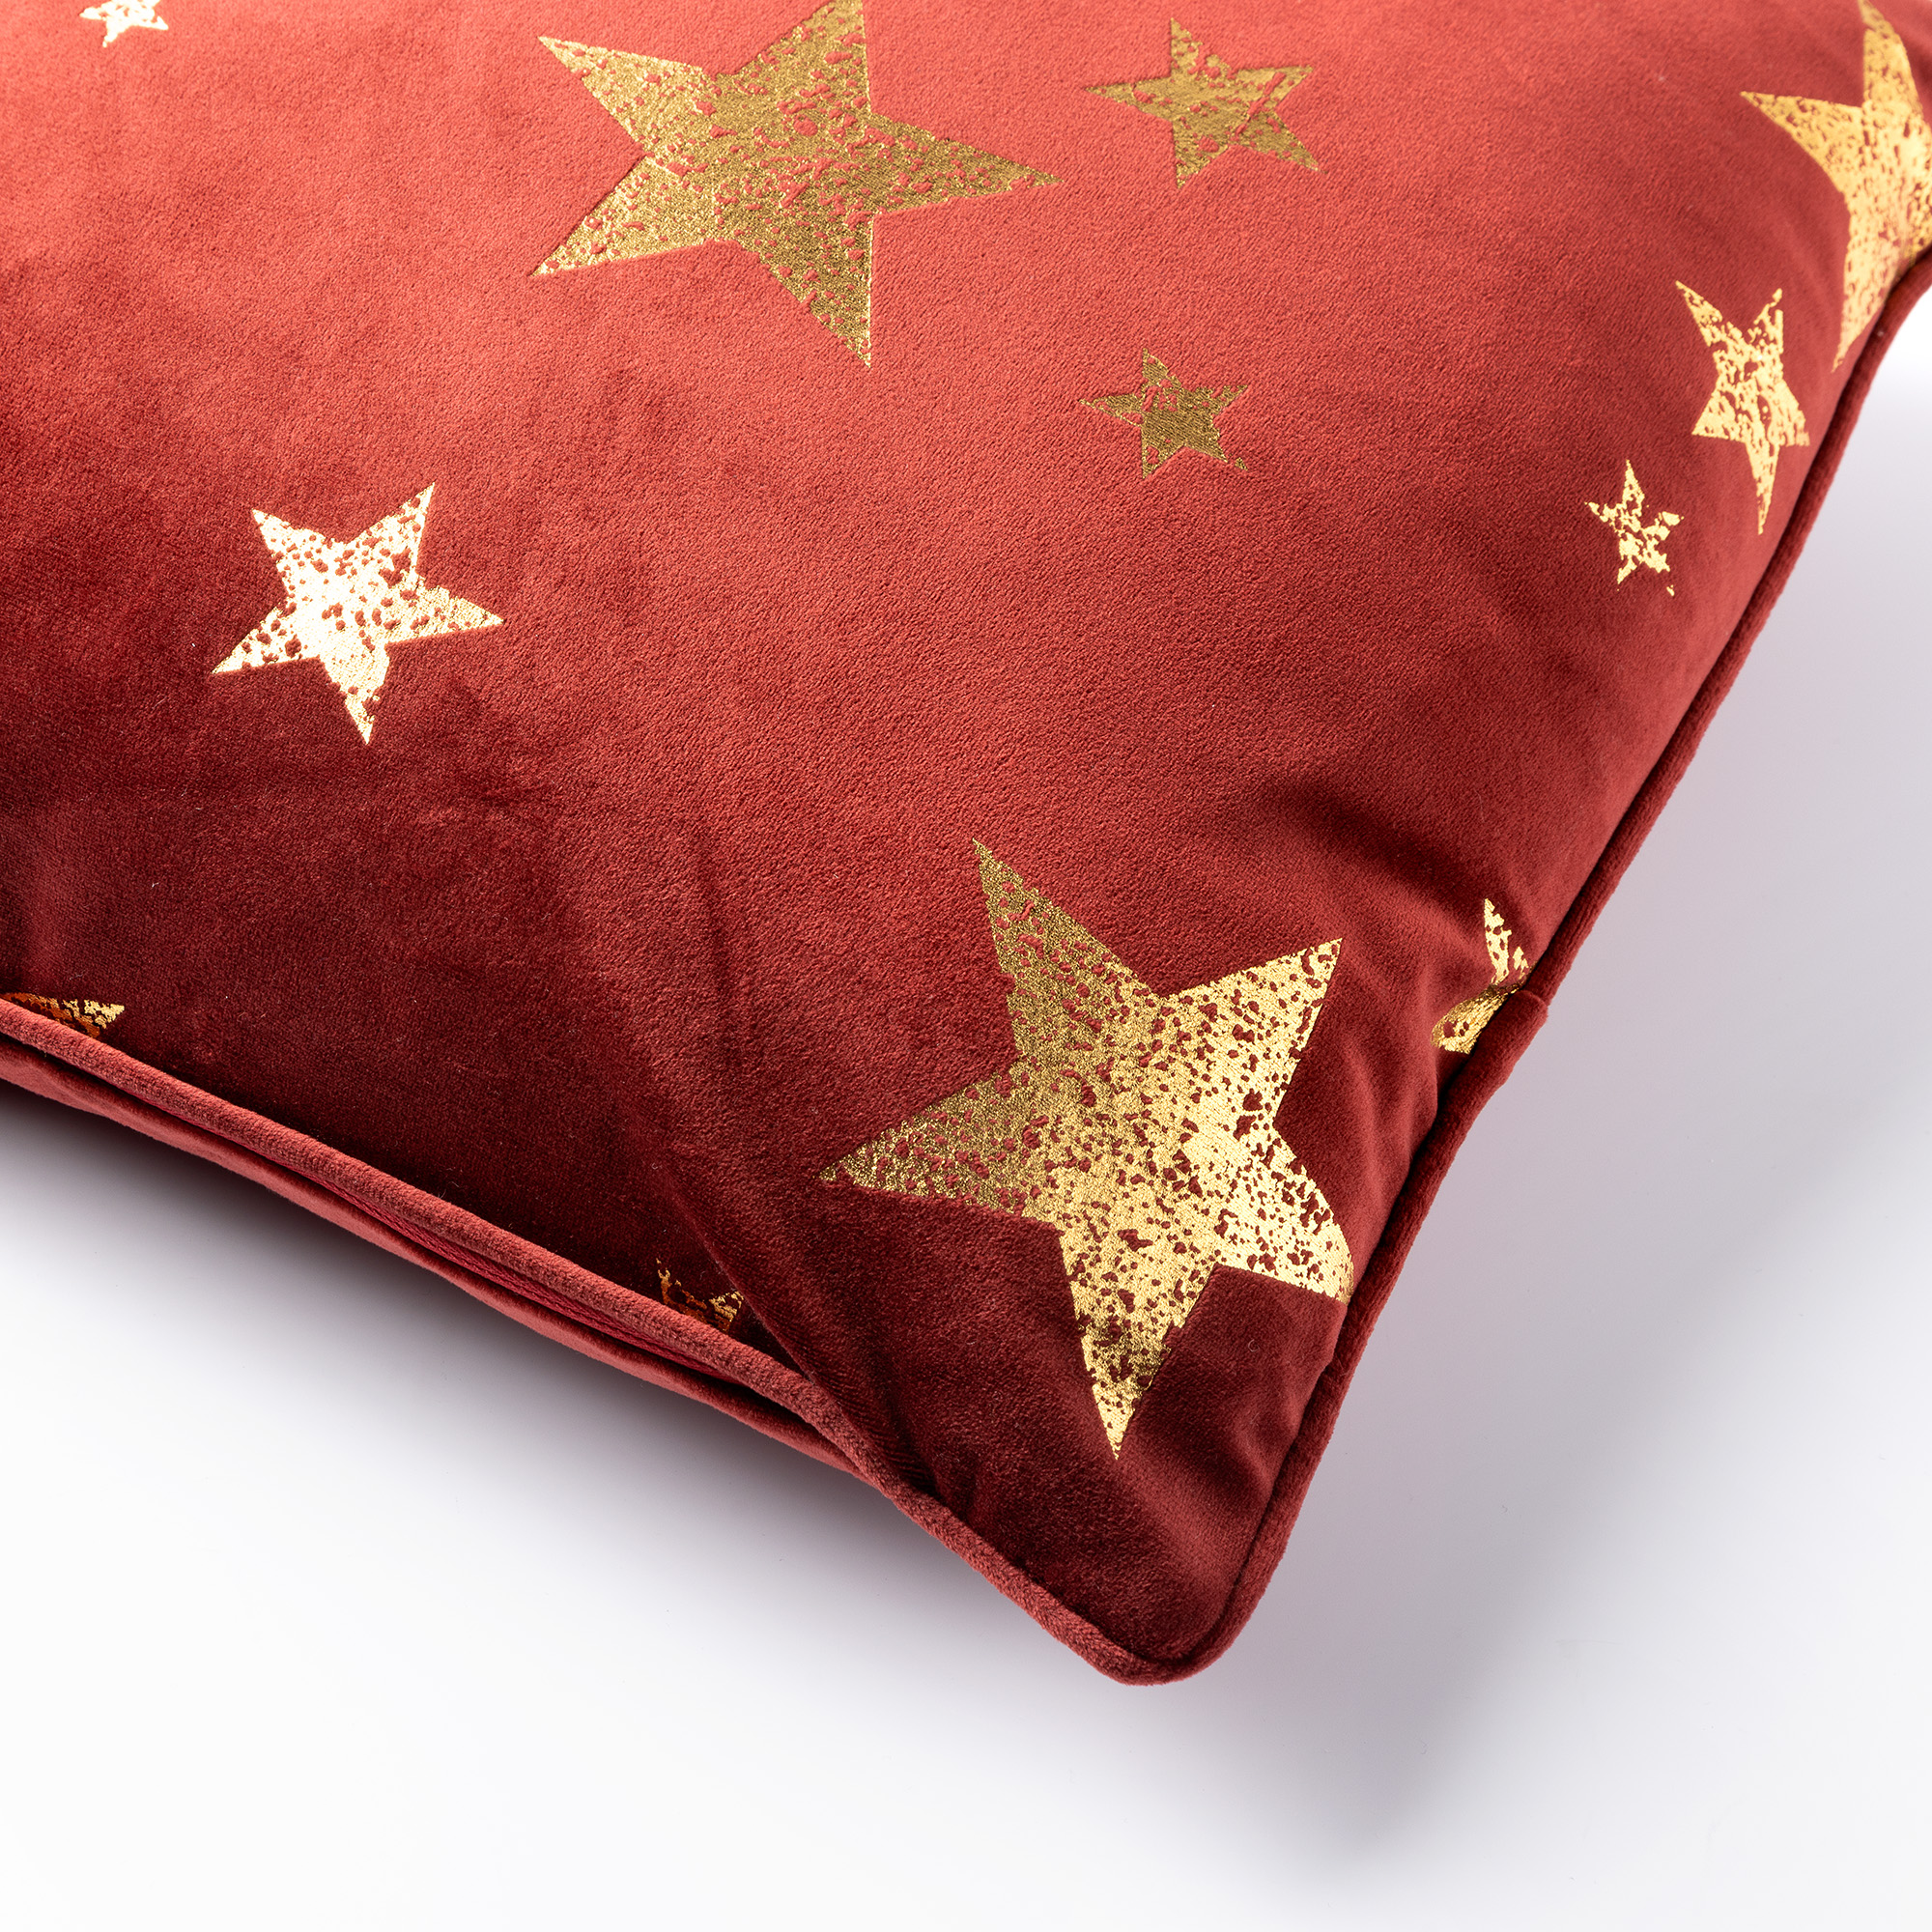 STARS - Sierkussen 45x45 cm - velvet met gouden sterren - Biking red - rood